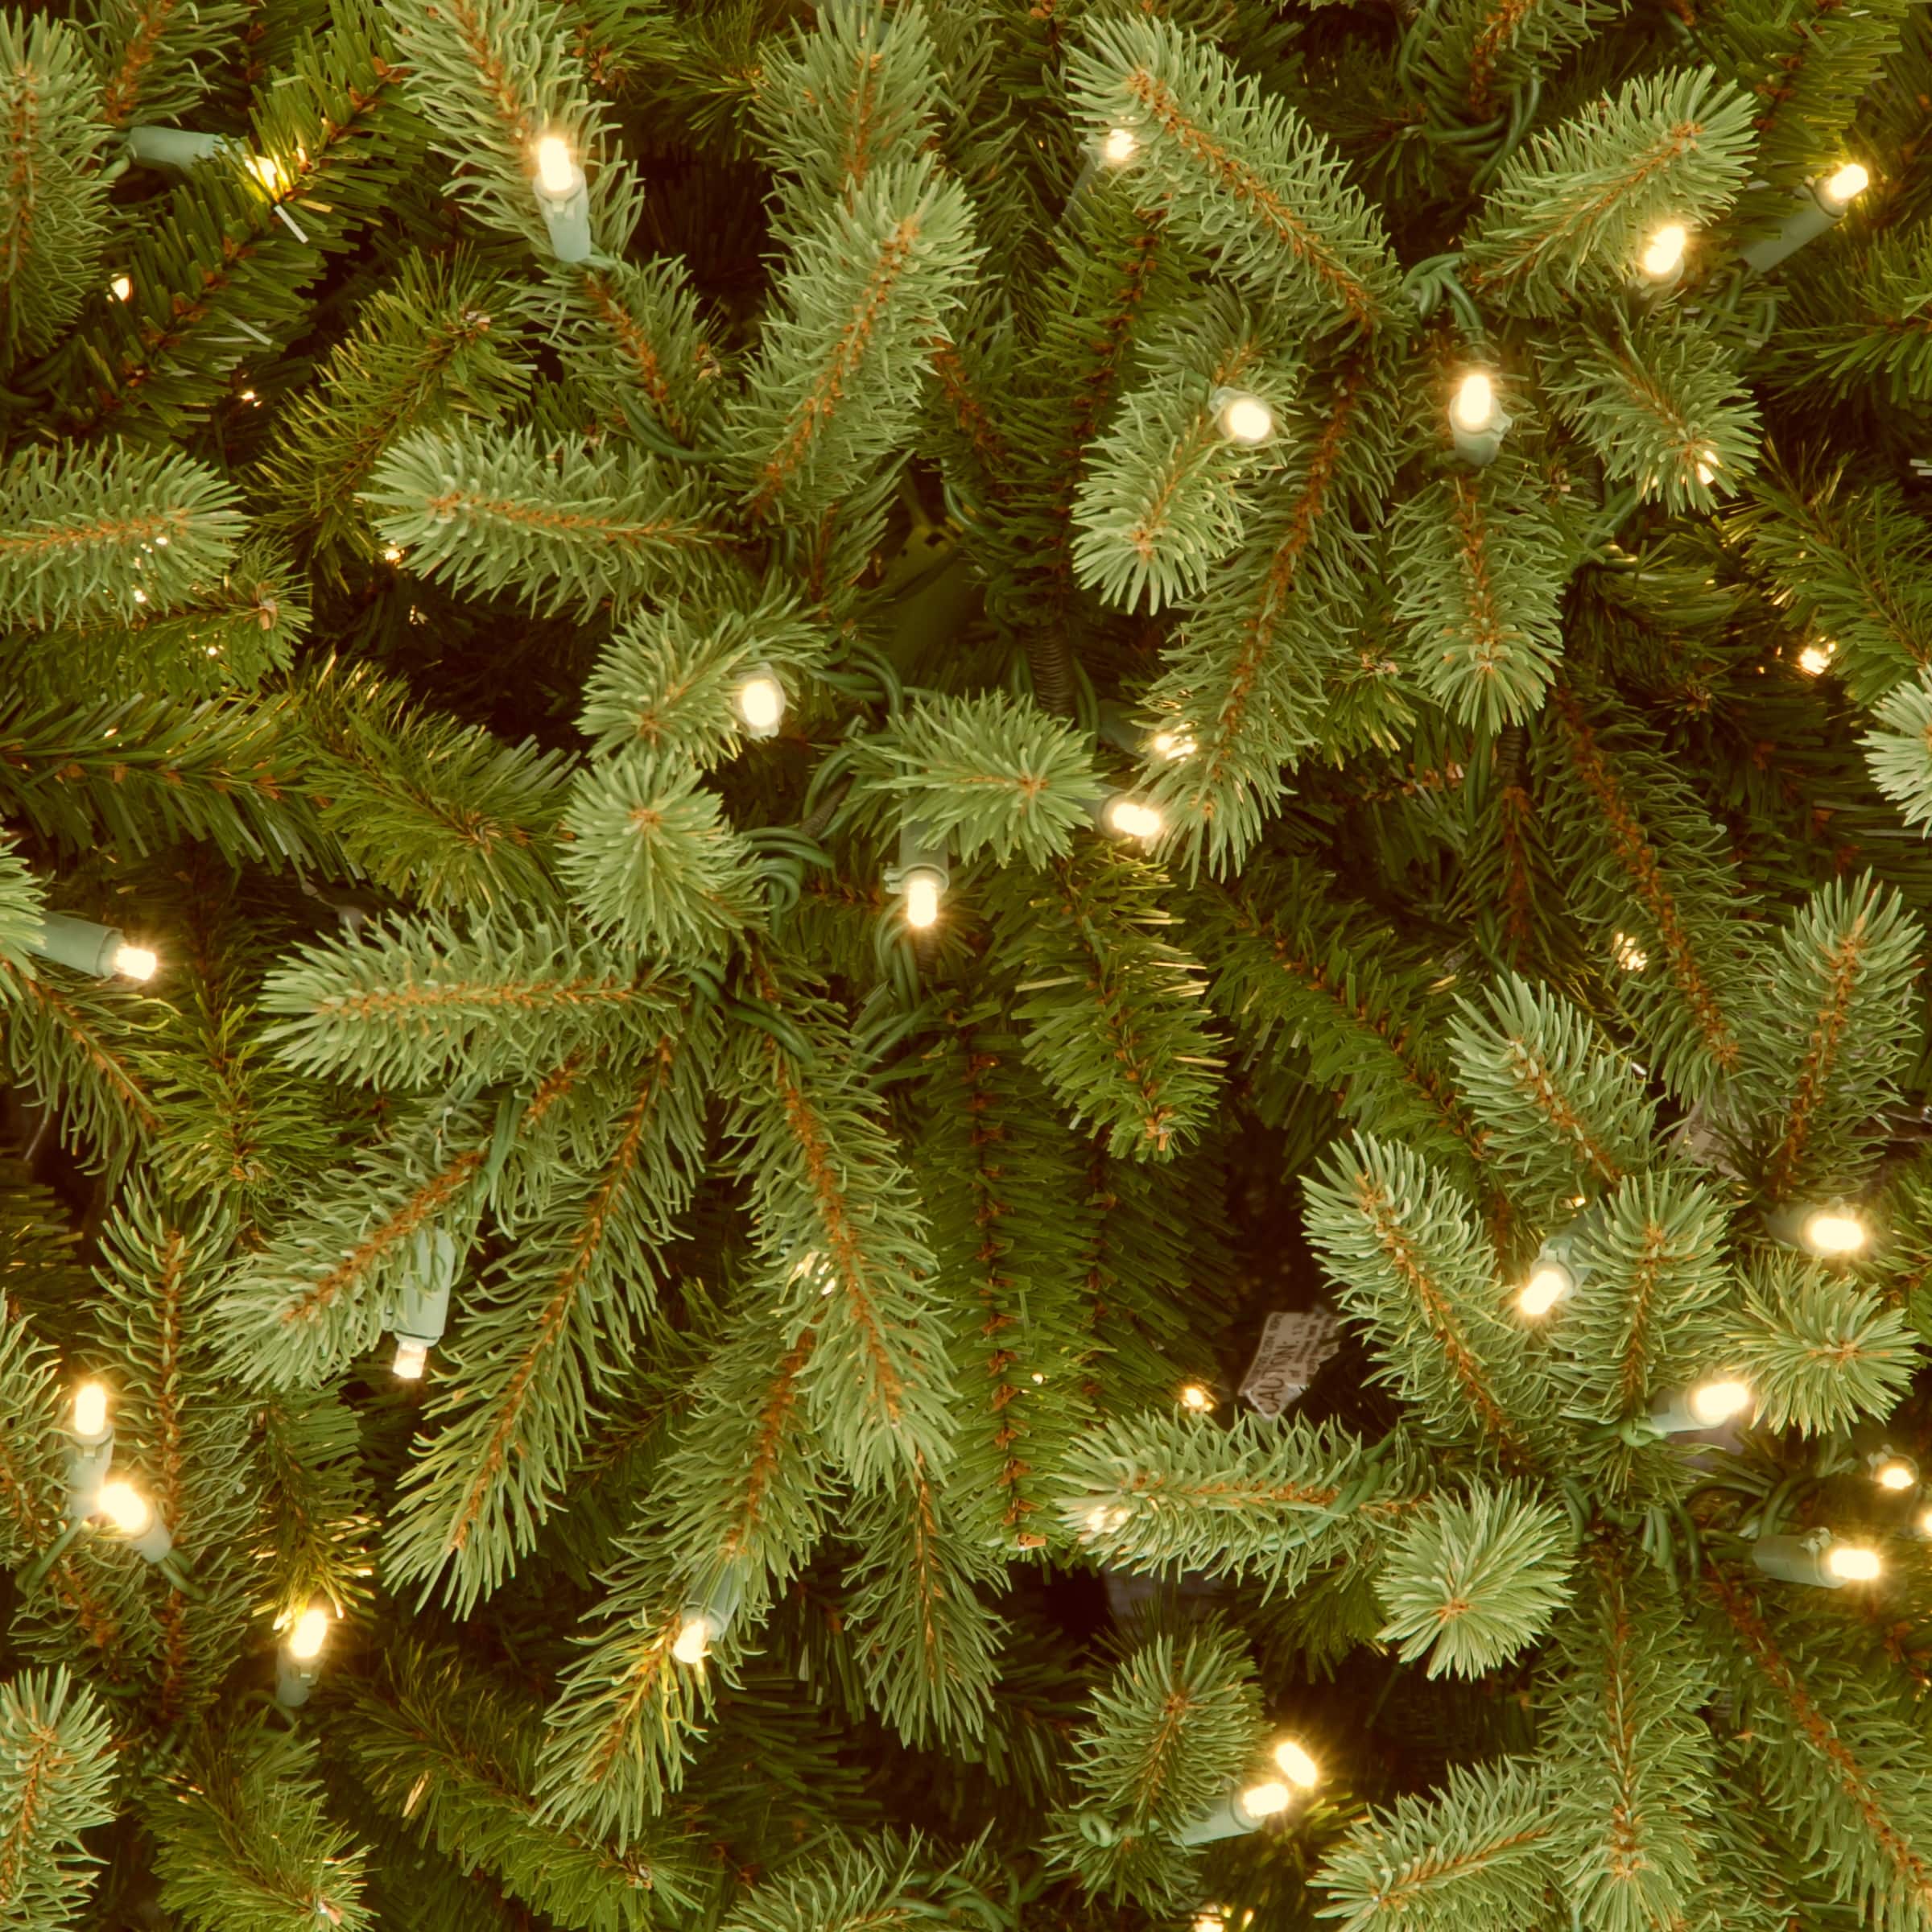 9ft. Pre-Lit Jersey Fraser Fir Artificial Christmas Tree, Clear Lights